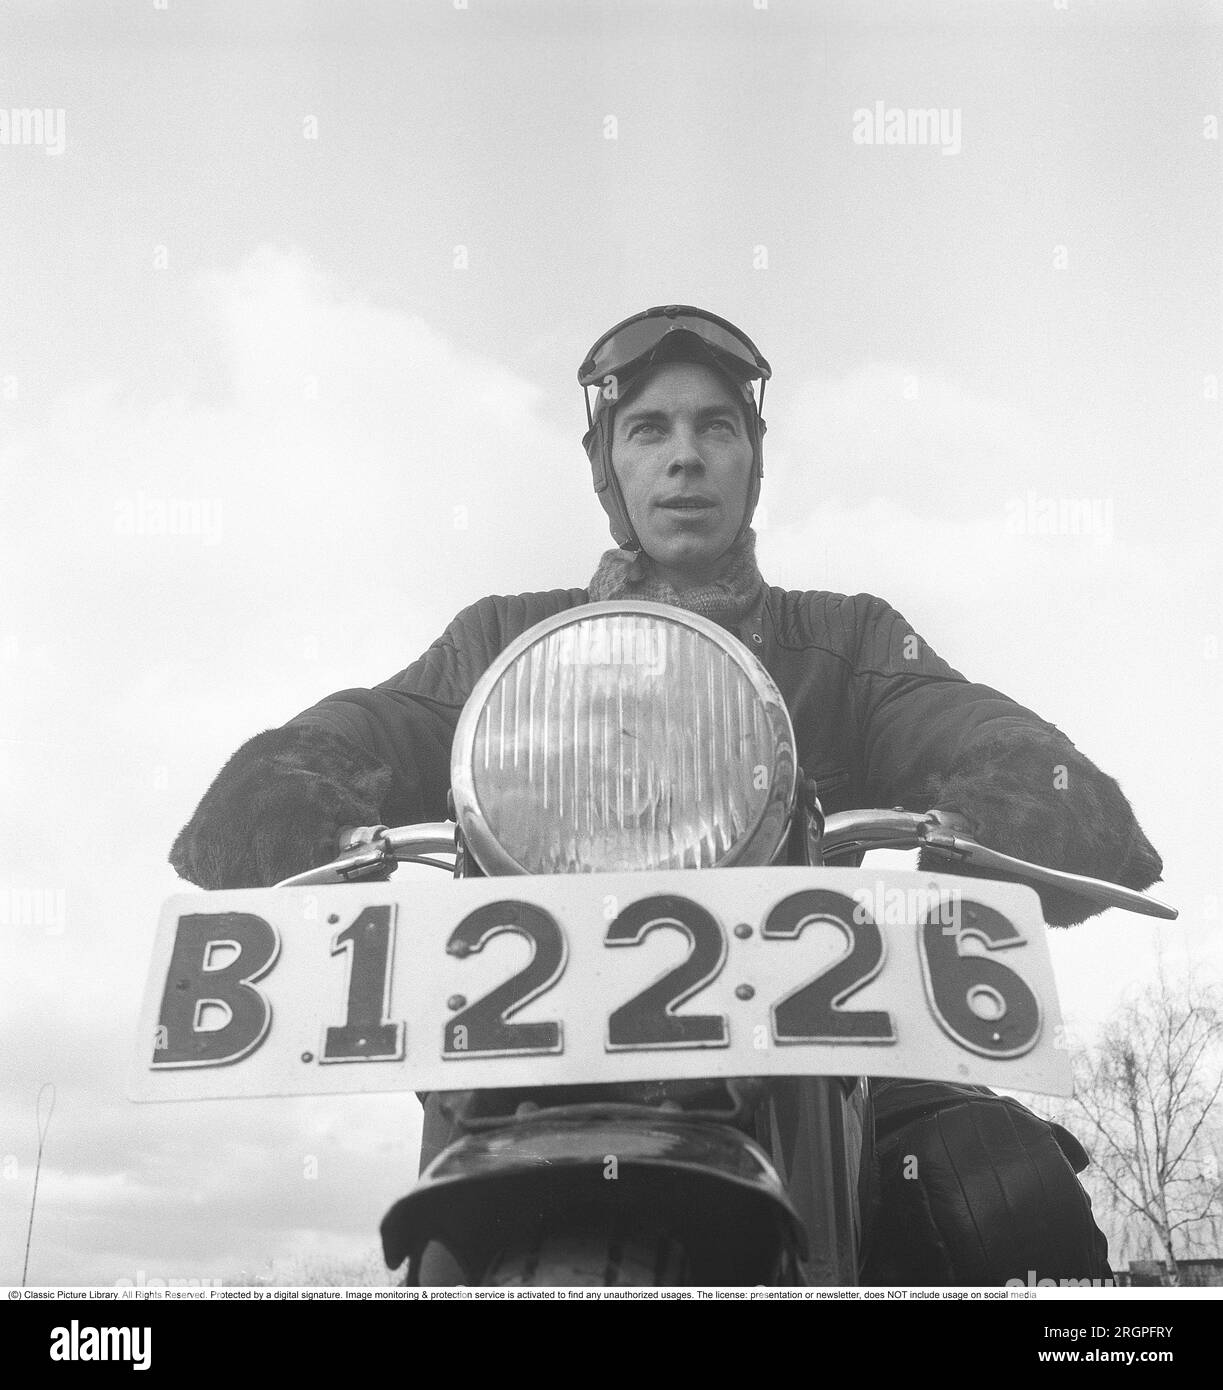 Motocycliste dans les années 1950 Un jeune homme habillé de la manière typique des motocyclistes dans les années 1950 Tout en cuir. Bottes, pantalons et vestes en cuir. Il est assis sur sa moto. Suède 1953. Il est l'acteur Sven-Eric Gamble, 1924-1976. Kristoffersson réf. BM73-1 Banque D'Images